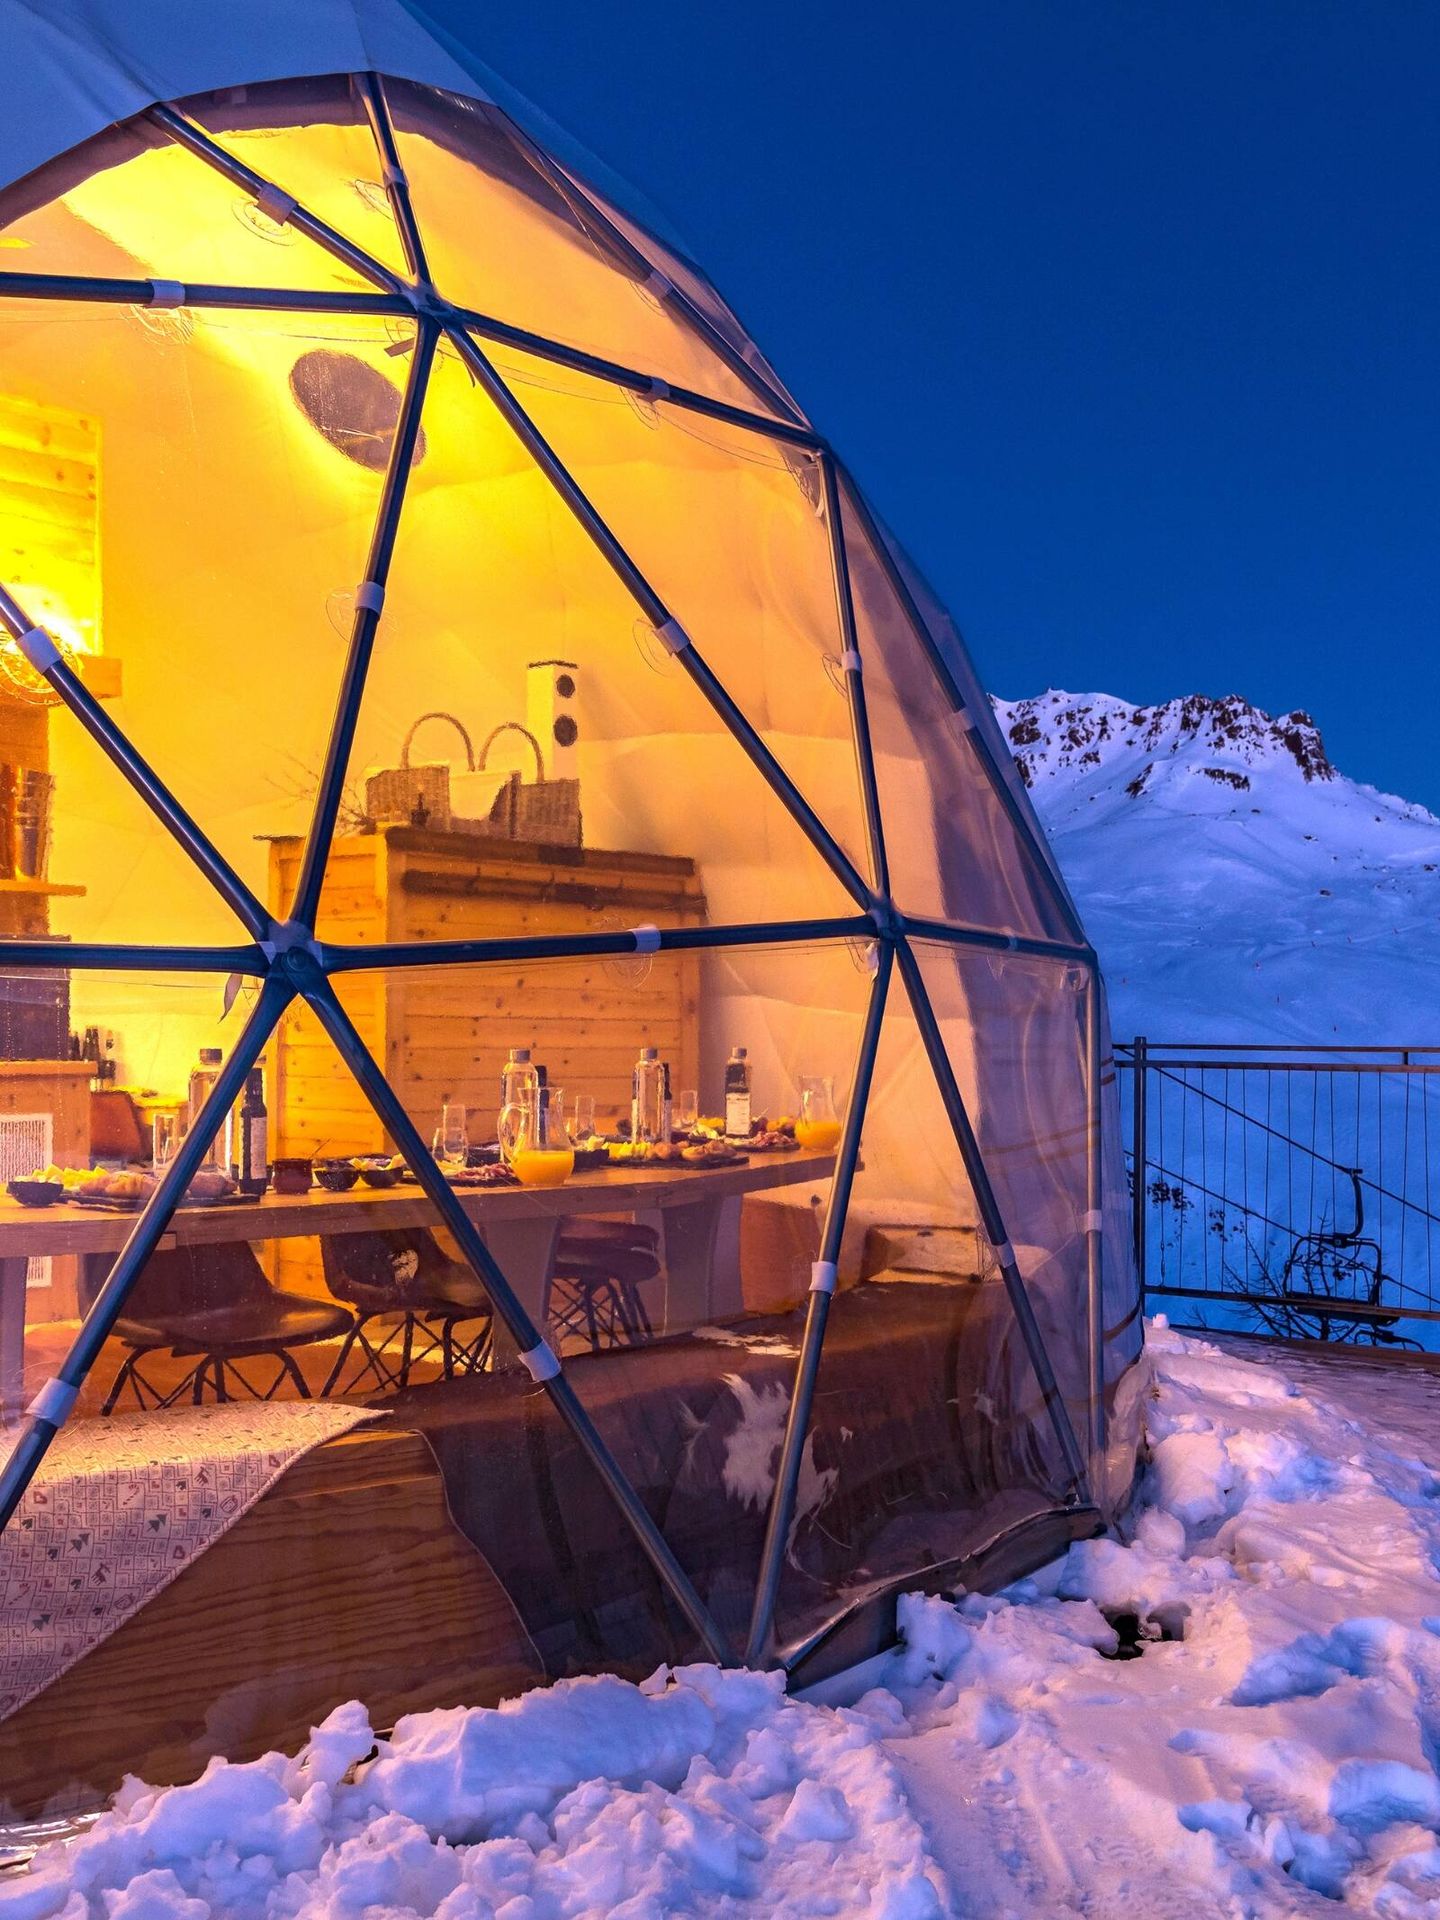 La ventana panorámica de los iglús de Las Mugas crea la sensación de alojarse directamente en el paisaje y permite ver las estrellas desde la cama. (Cortesía)